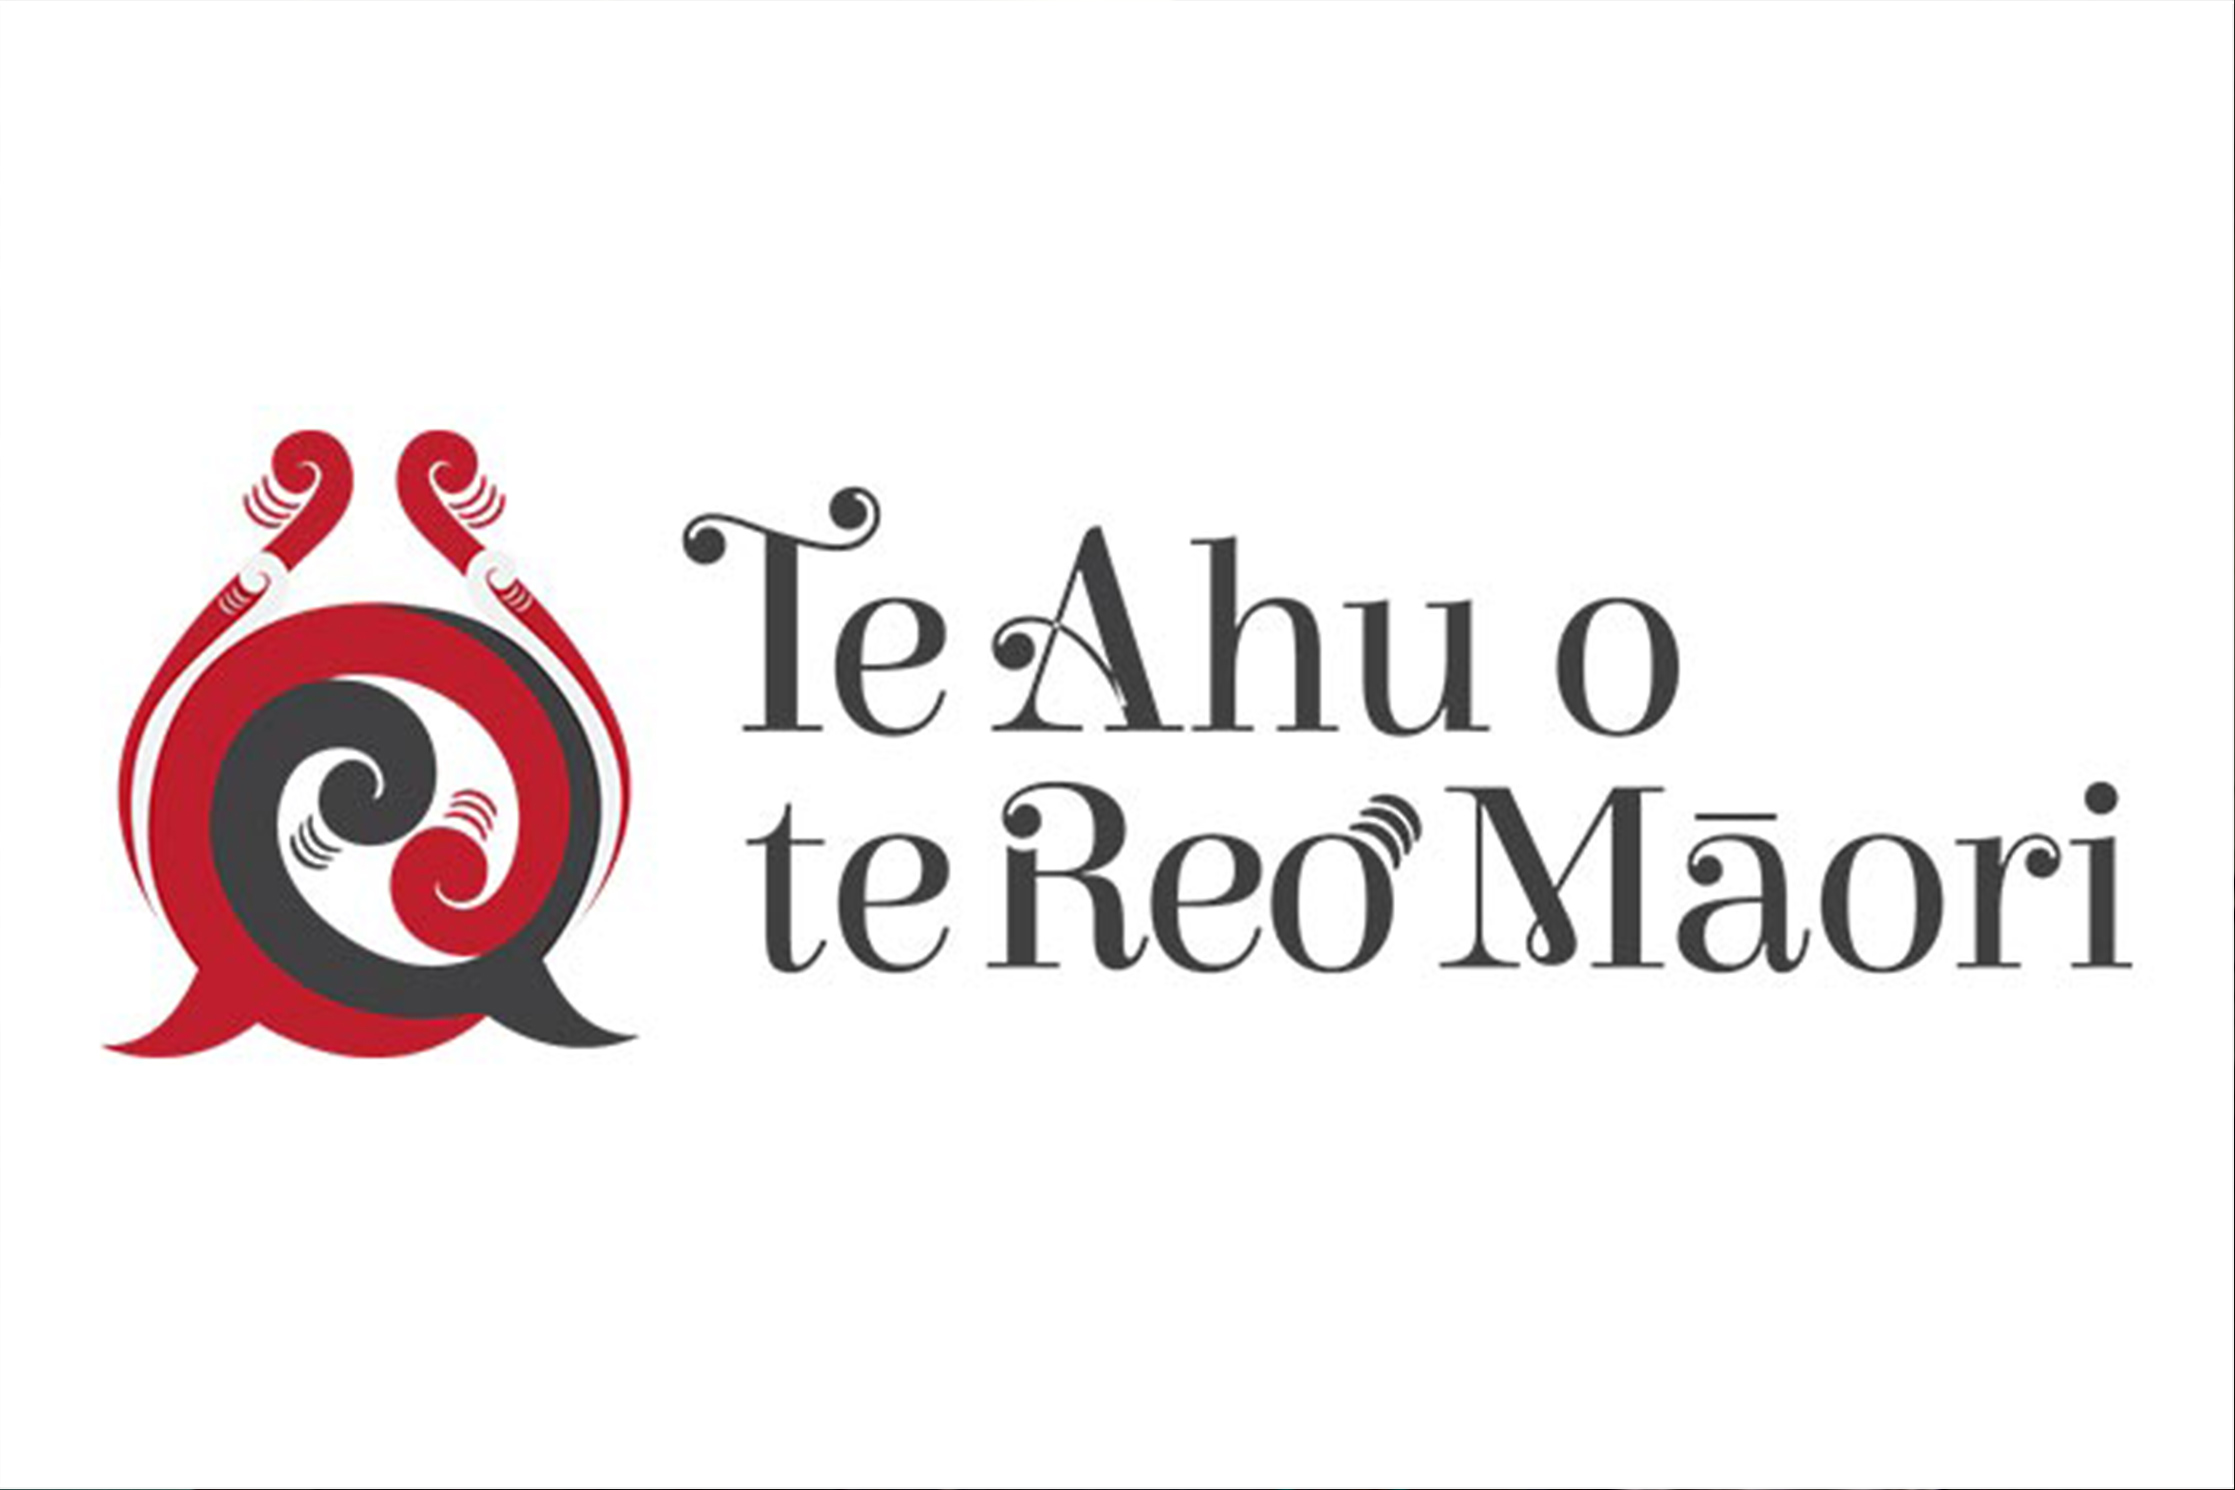 Te-Ahu-o-te-Reo-Maori